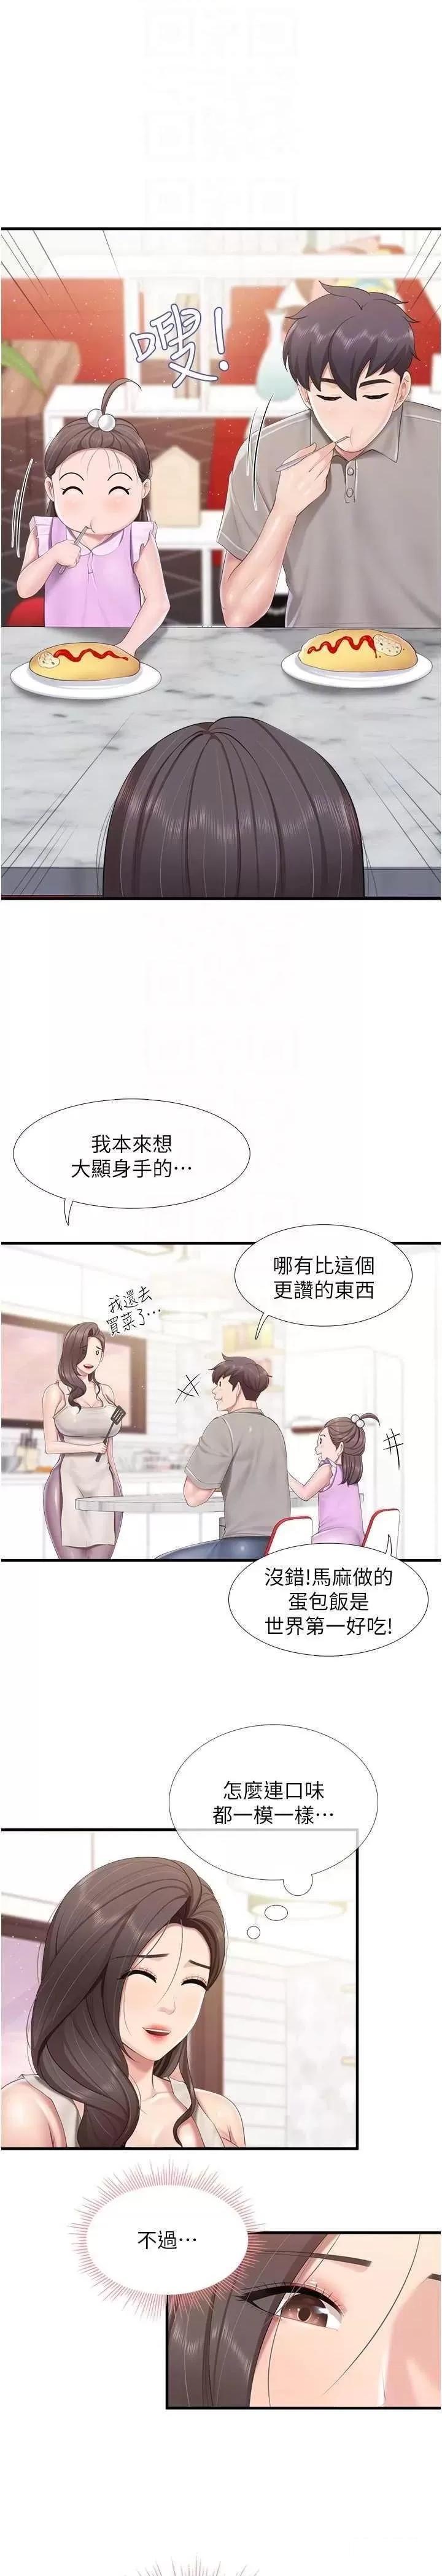 韩国污漫画 親子餐廳的媽媽們 第100话_今天要彻夜品尝孝真 13